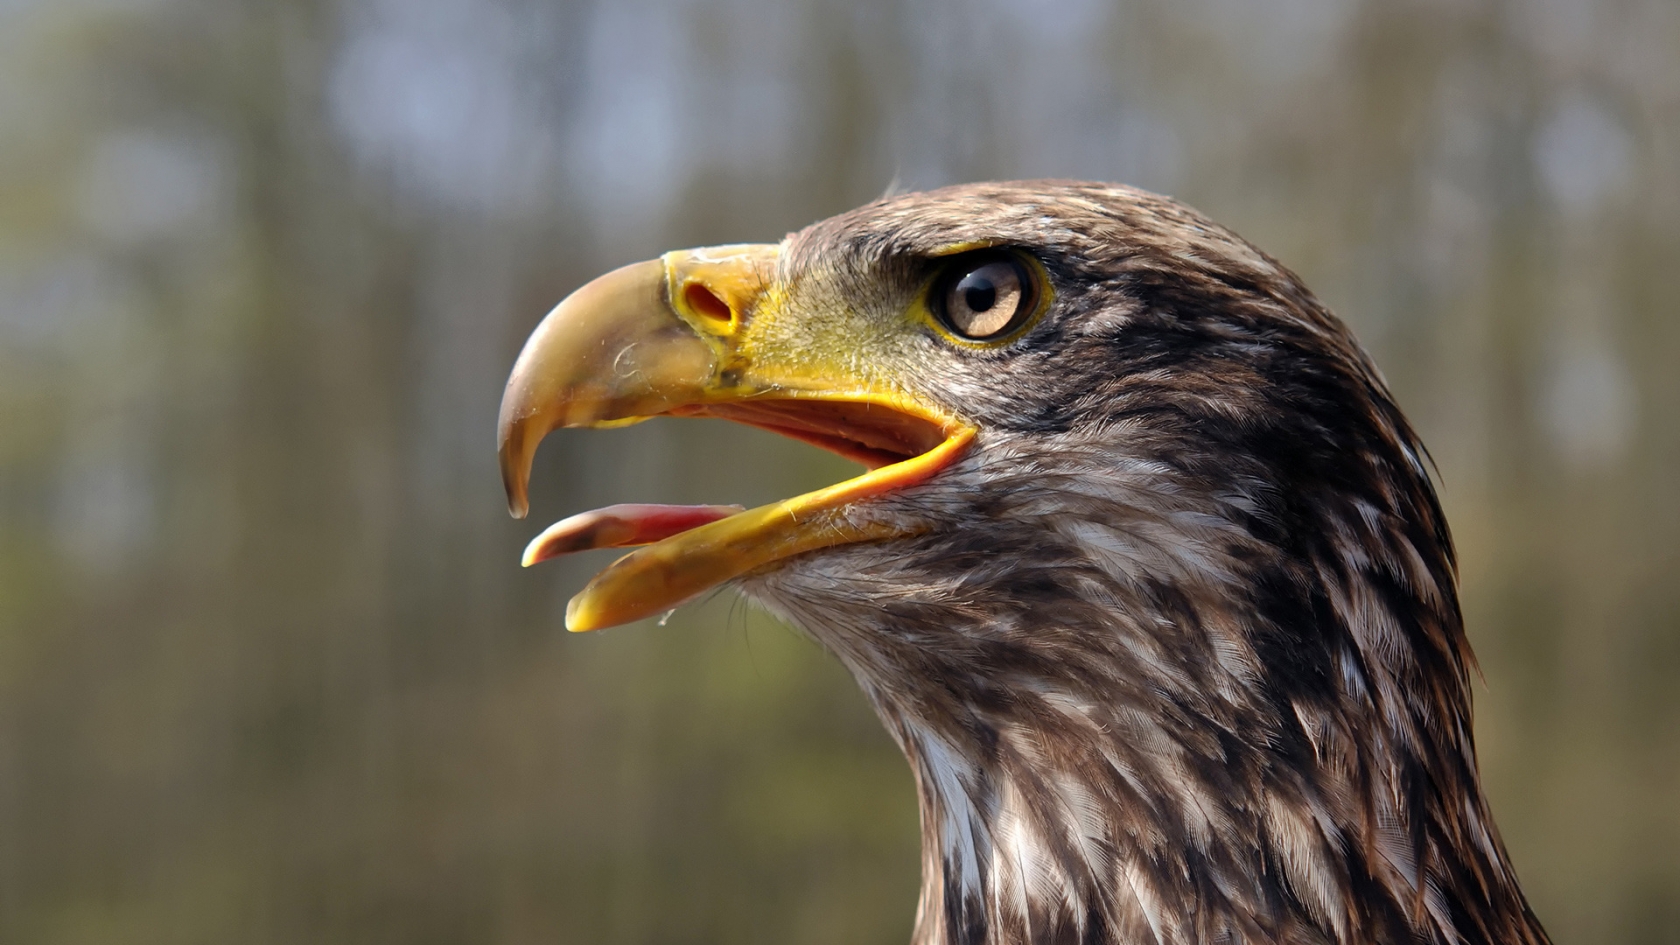 Juvenile Bald Eagle for 1680 x 945 HDTV resolution